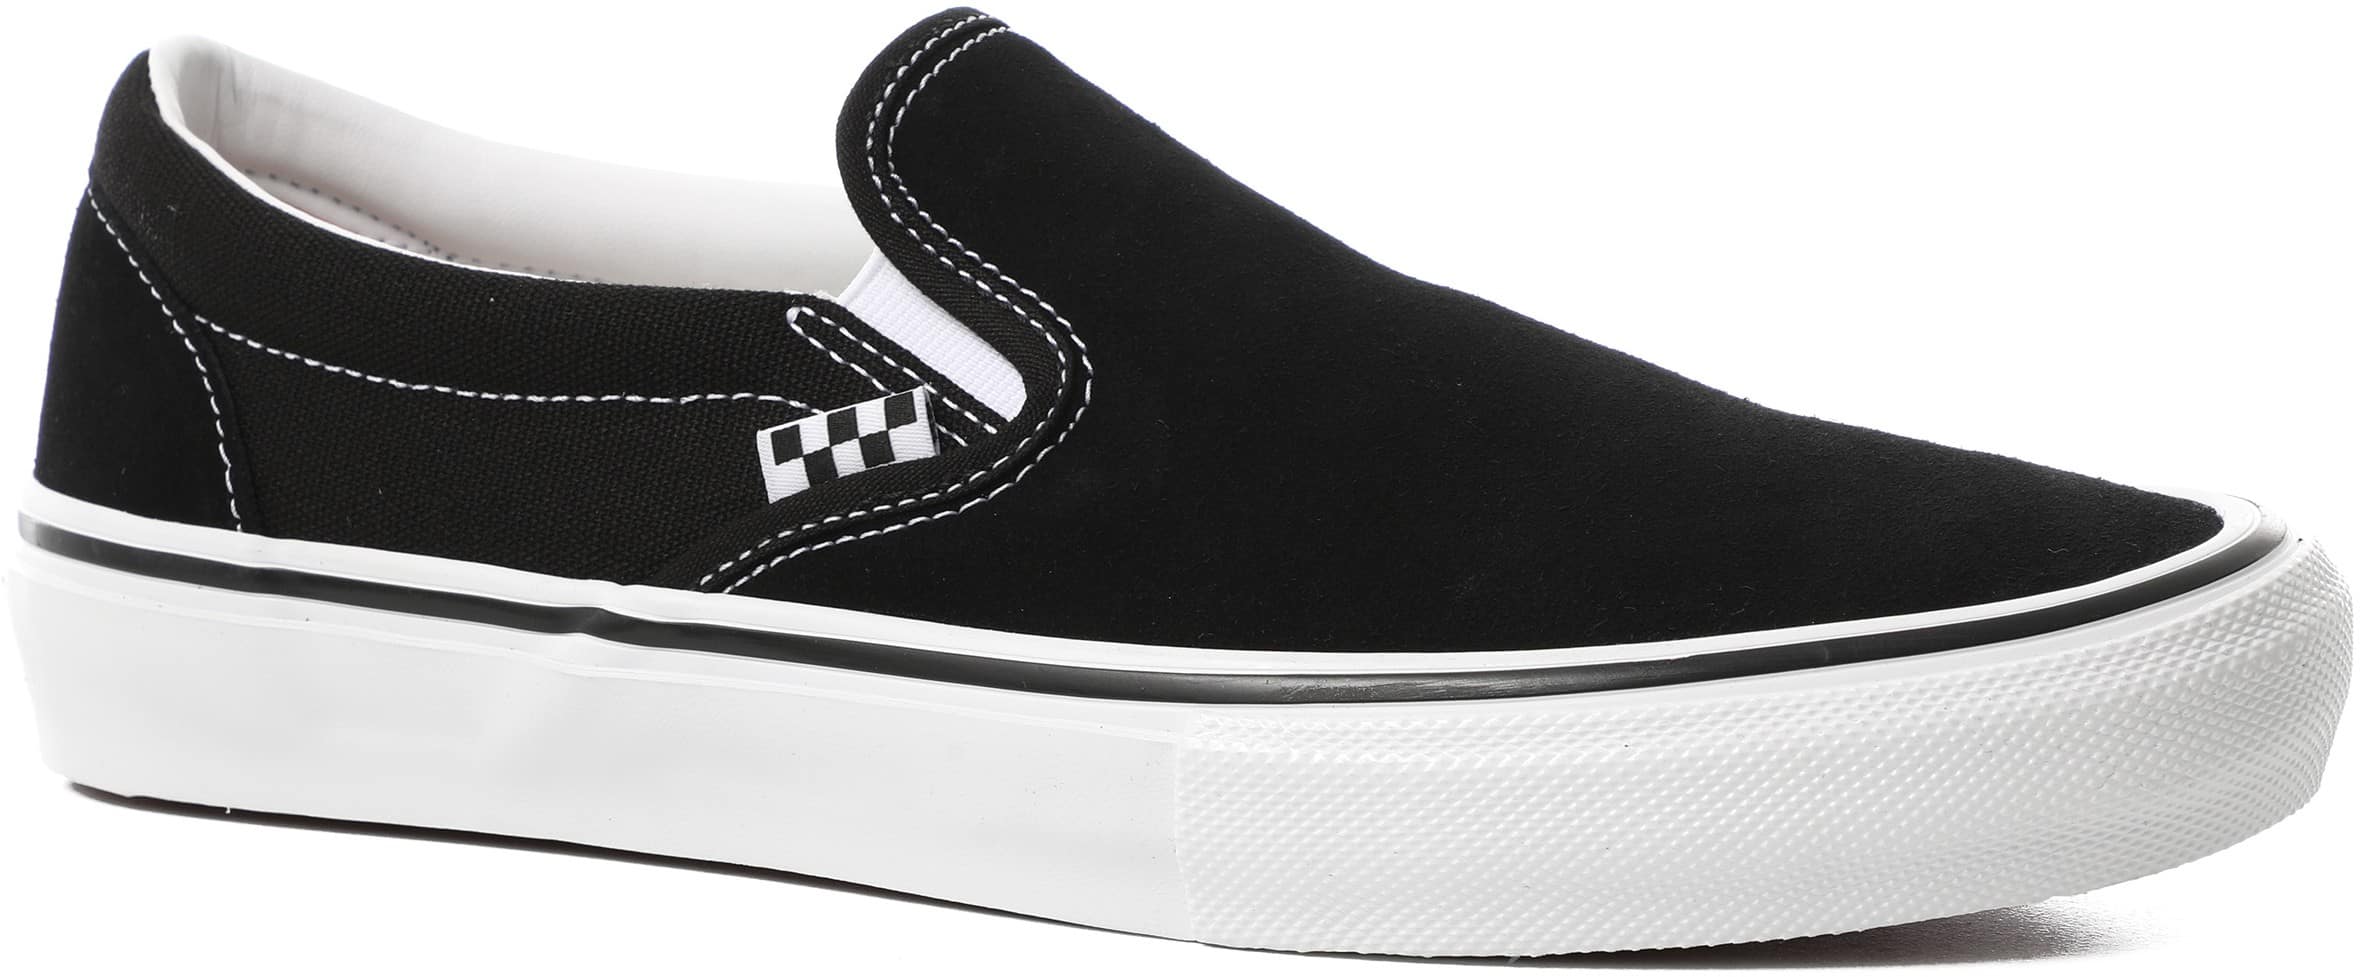 Vans Skate Slip-On Shoes - black/white | Tactics